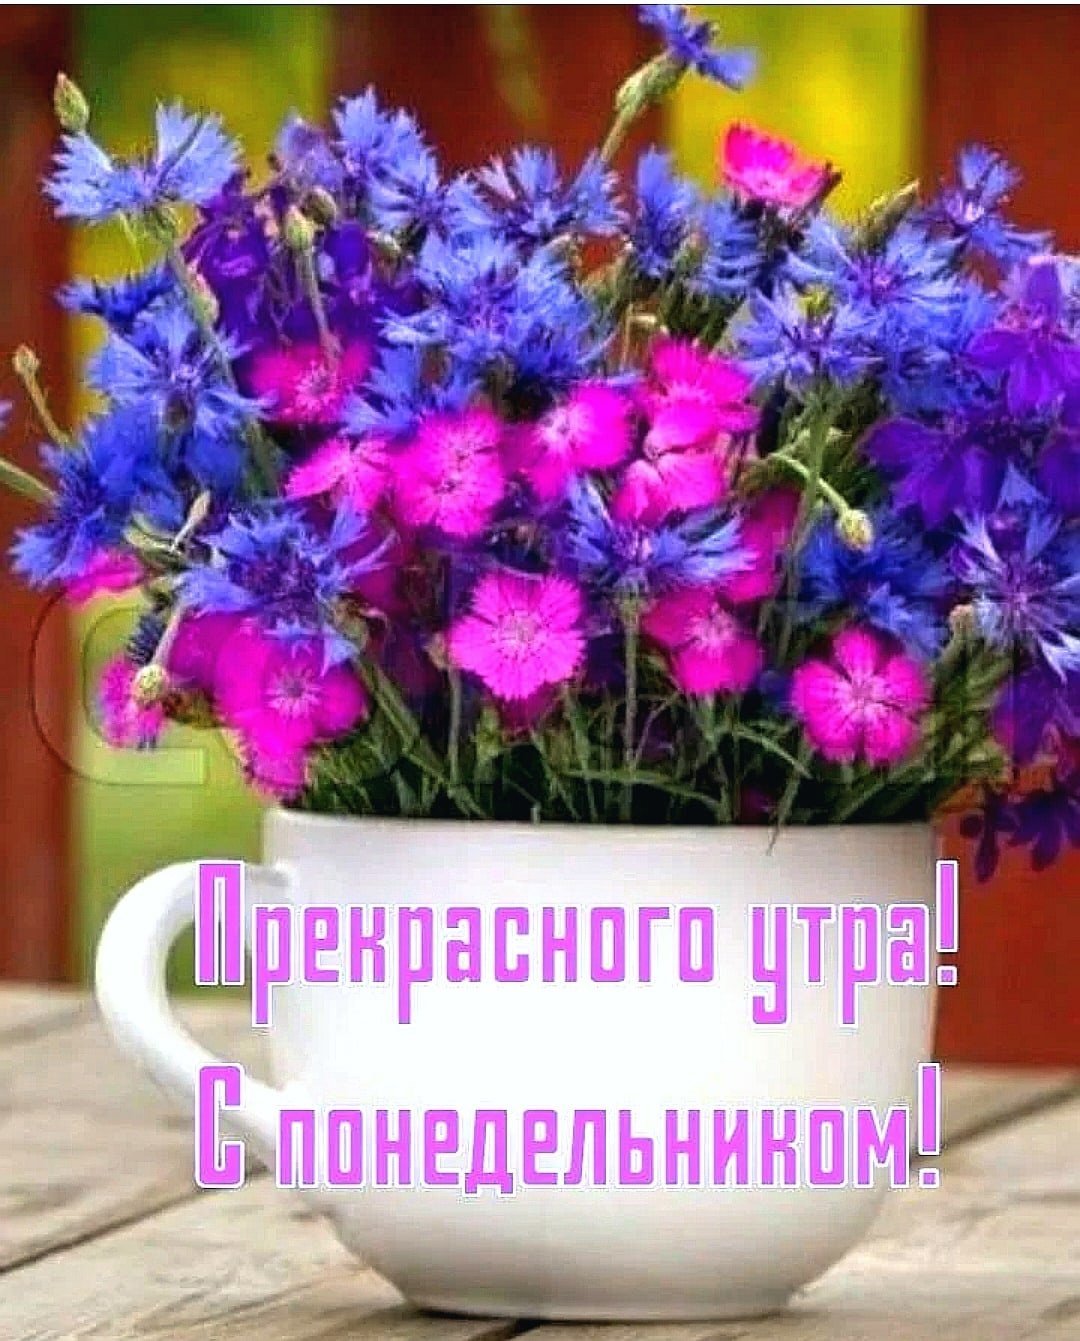 Цветы с добрыми пожеланиями. Доброе утро цветы с пожеланиями. Поздравления с добрым утром цветы. Открытки с добрым утром с цветами. Понедельник доброе утро хорошего дня картинки красивые